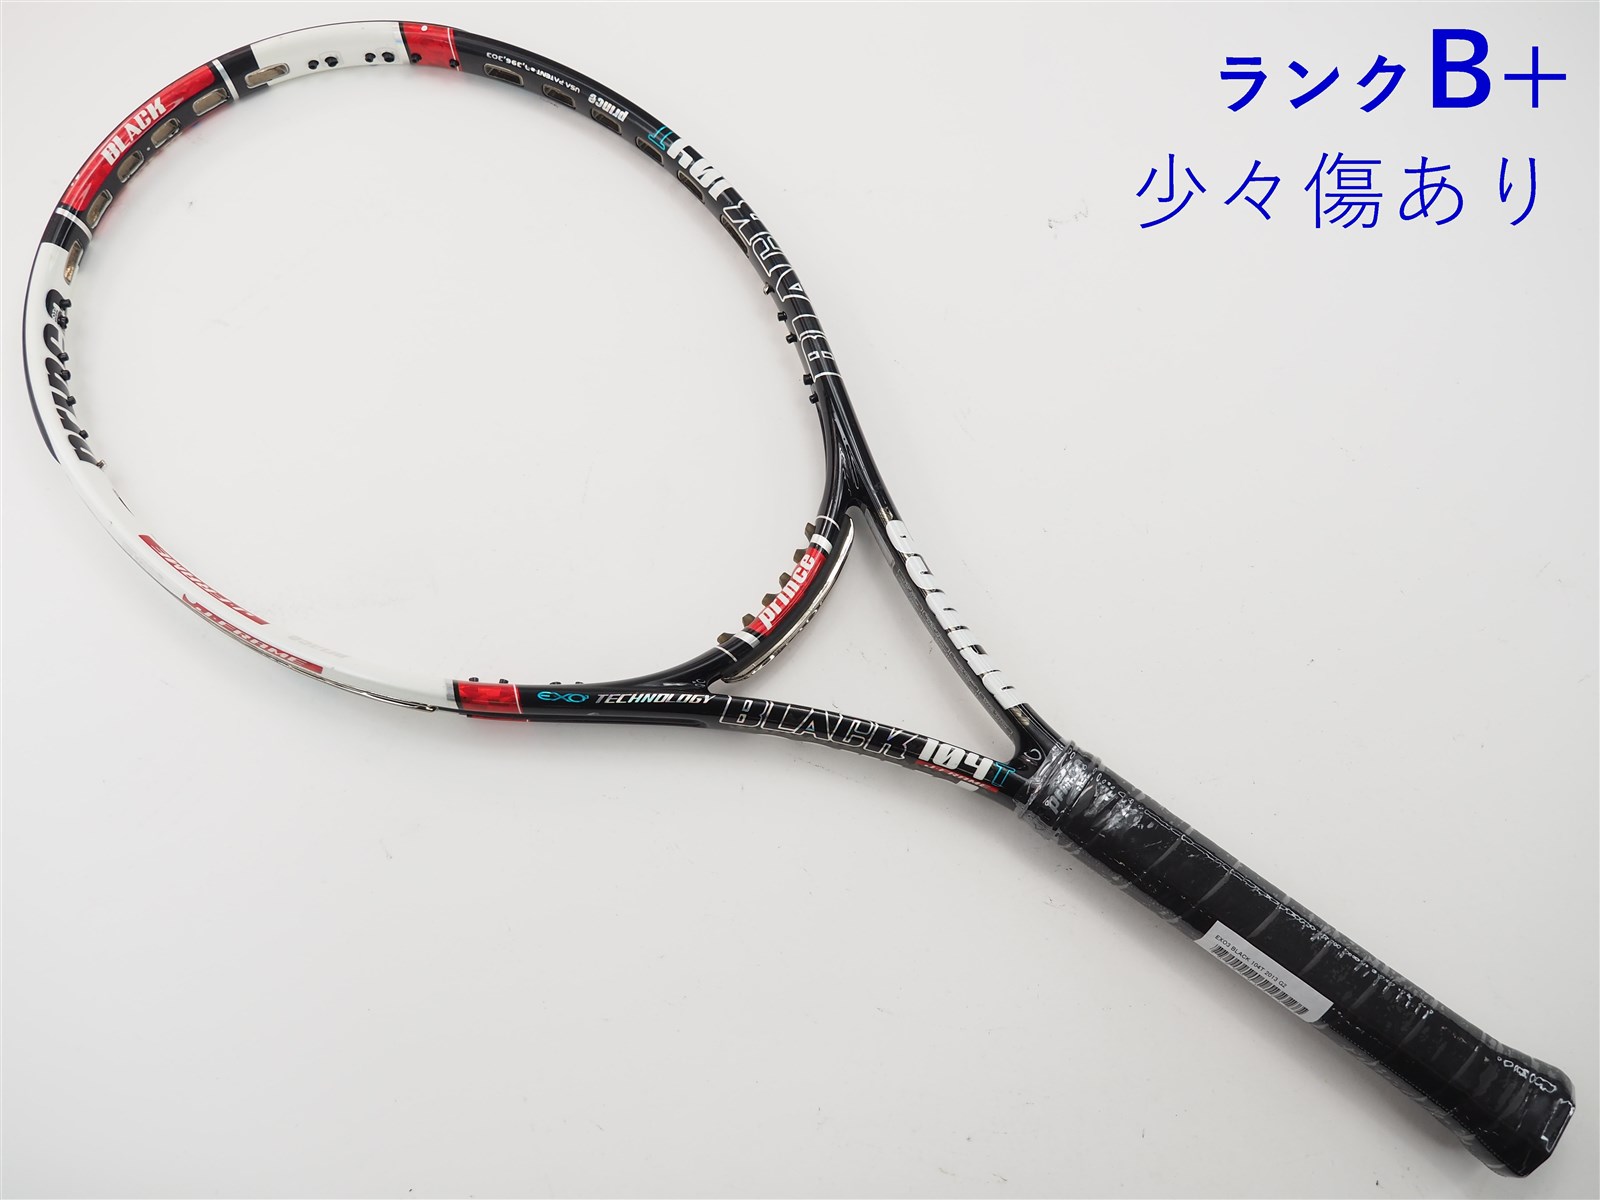 270インチフレーム厚テニスラケット プリンス イーエックスオースリー ブラック 104T 2013年モデル (G2)PRINCE EXO3 BLACK 104T 2013